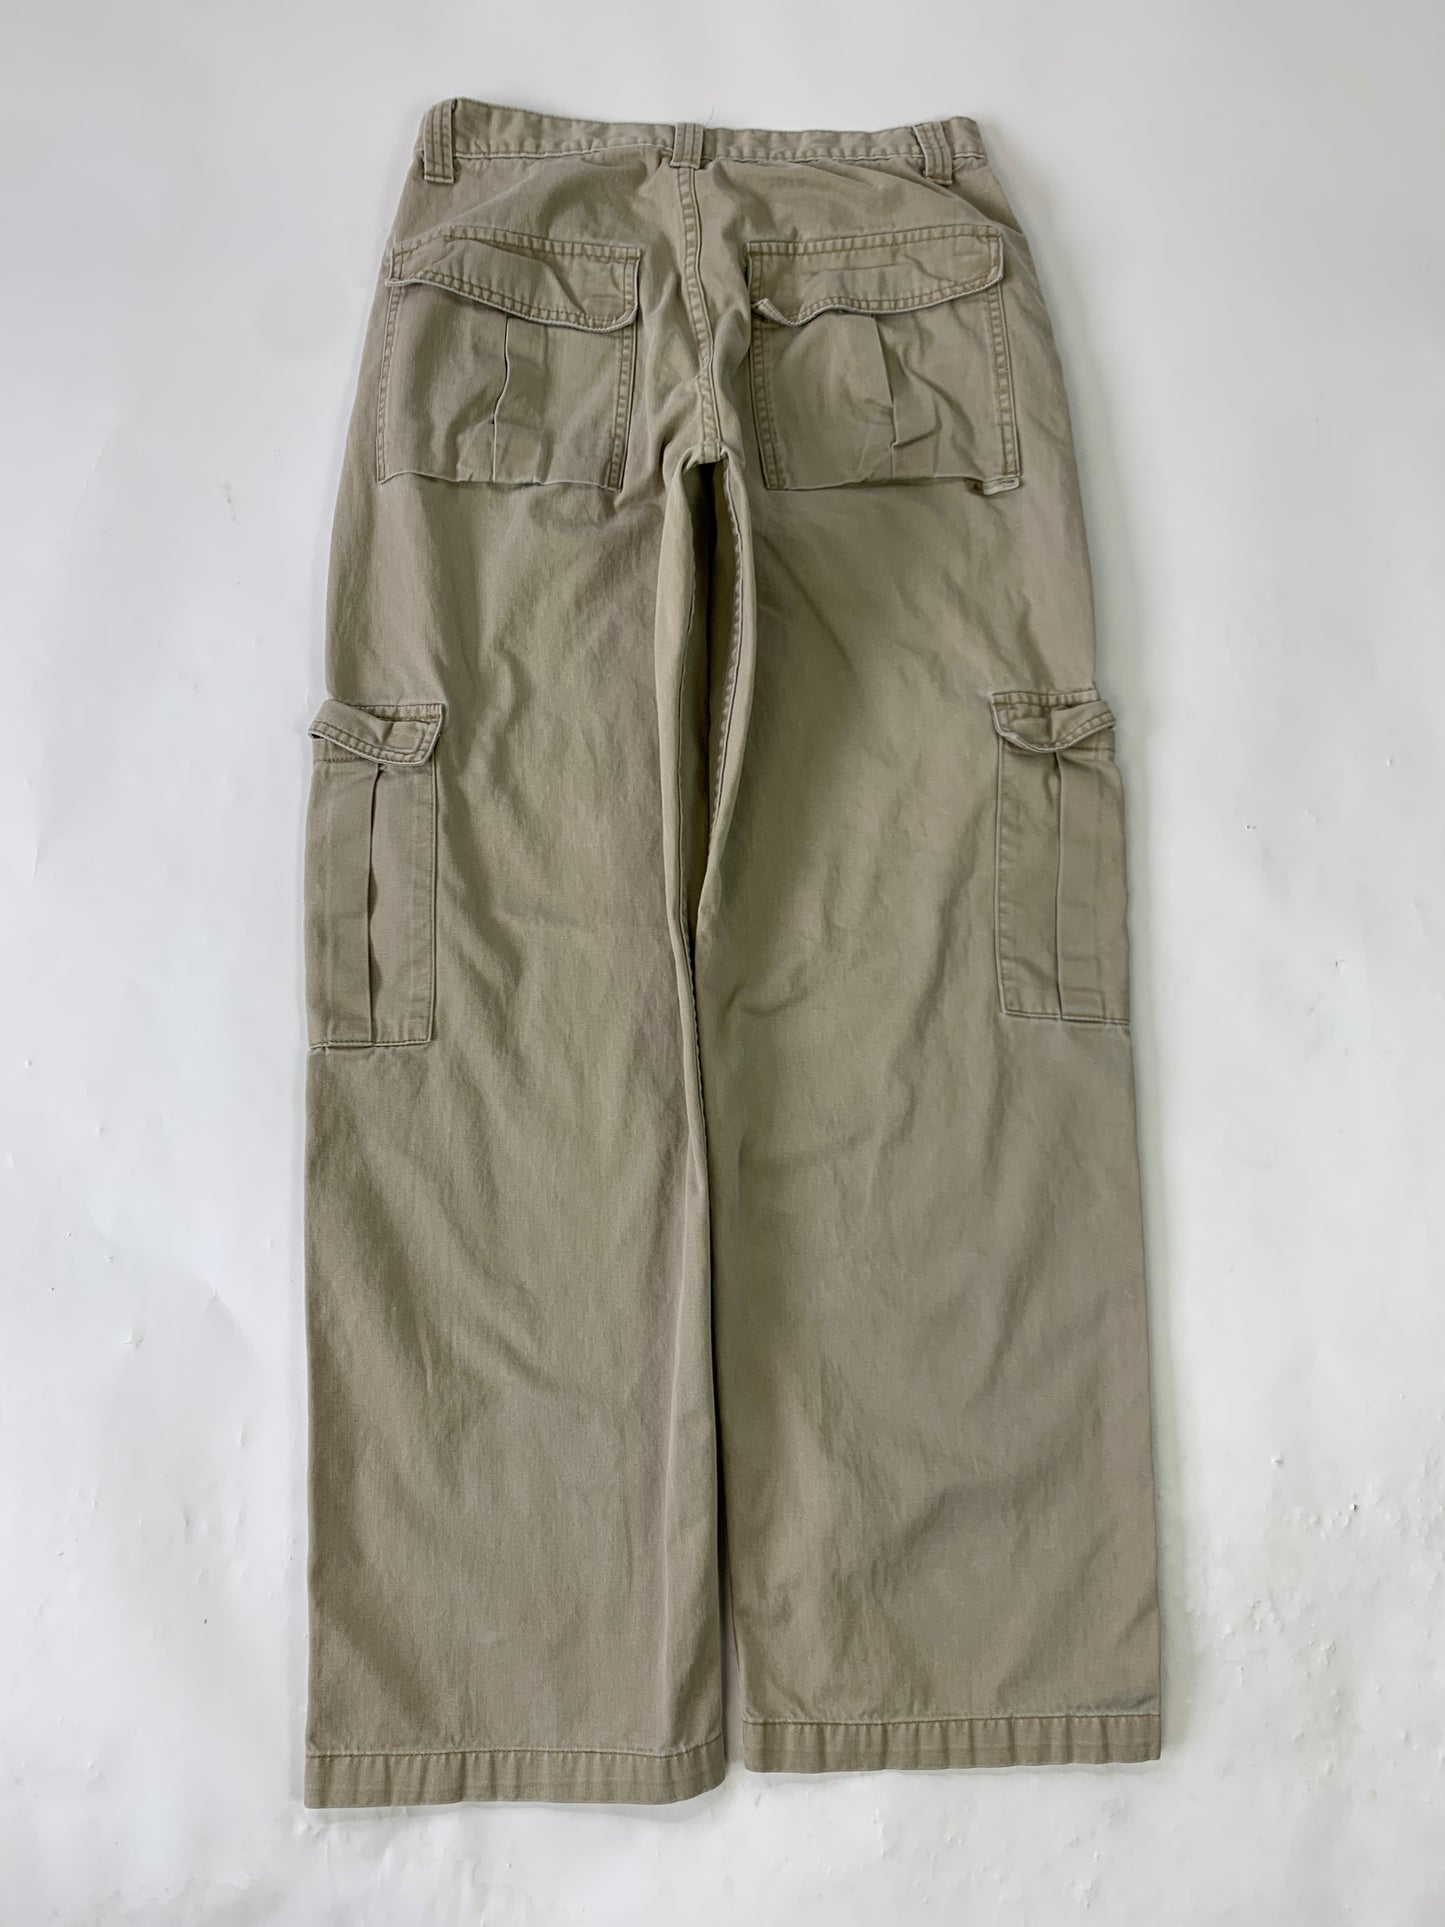 Levis Silvertab Khaki Vintage Cargo Pants - 32 x 34